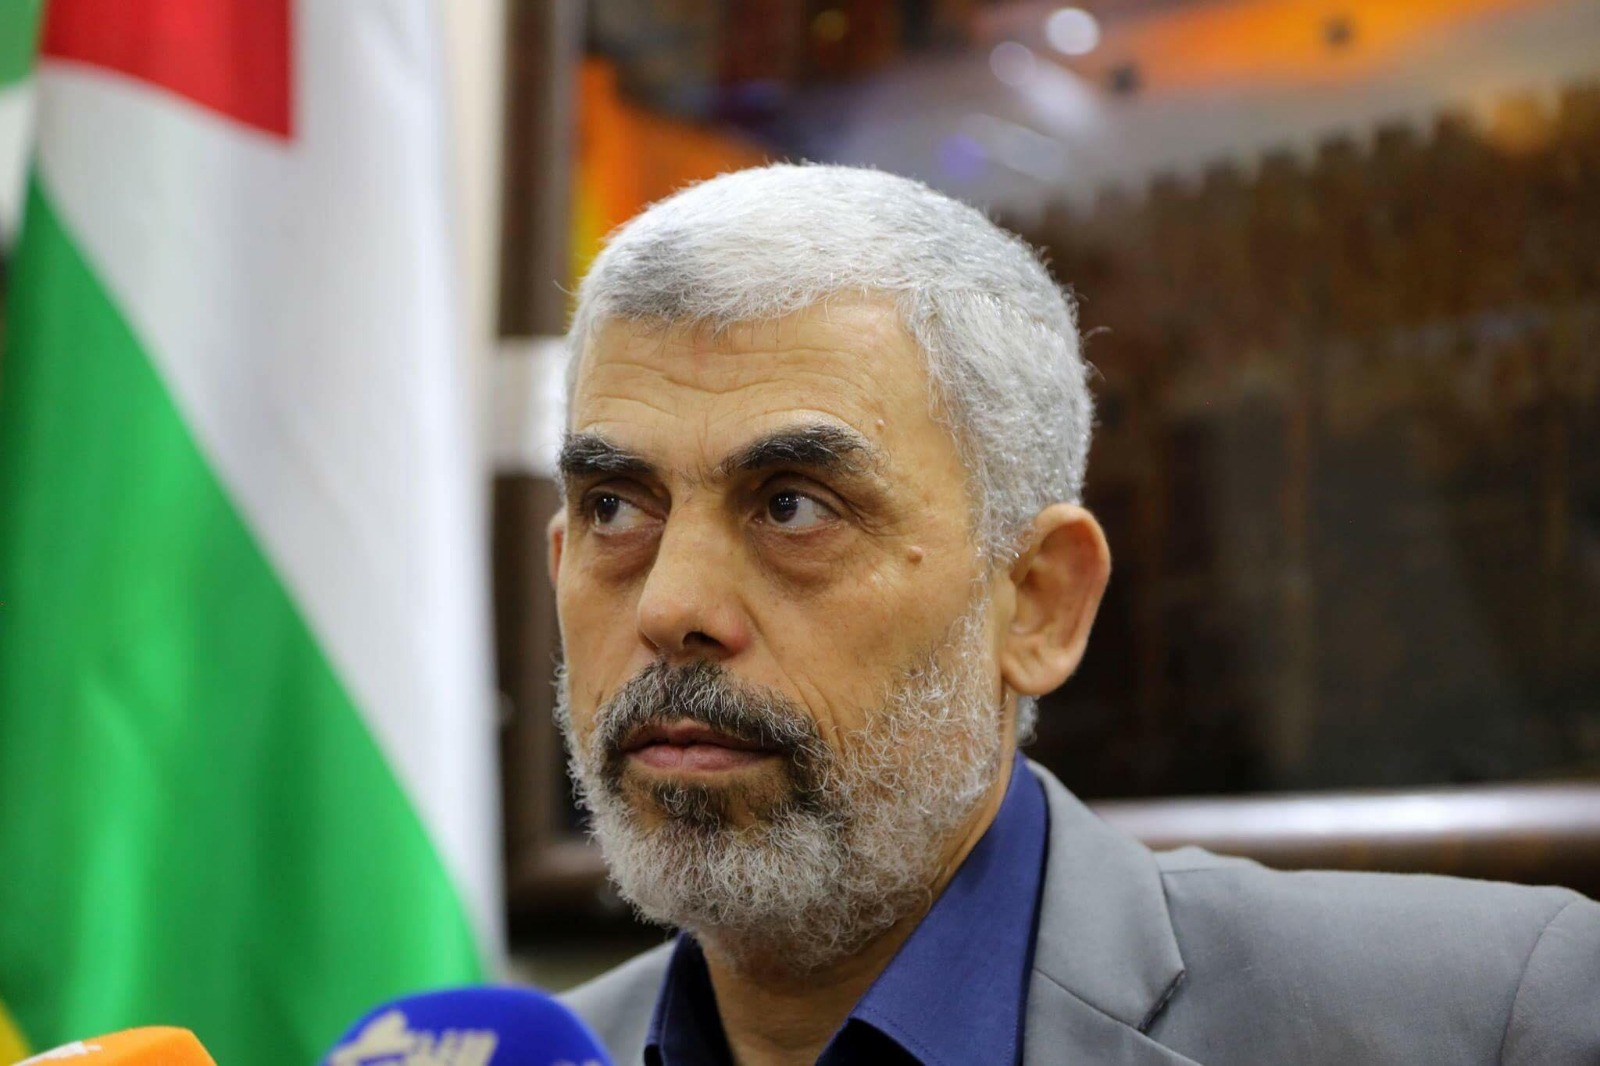  يحيي السنوار قائد حركة حماس في غزة أطلق مبادرة لاجراء صفقة لتبادل الأسرى مع إسرائيل